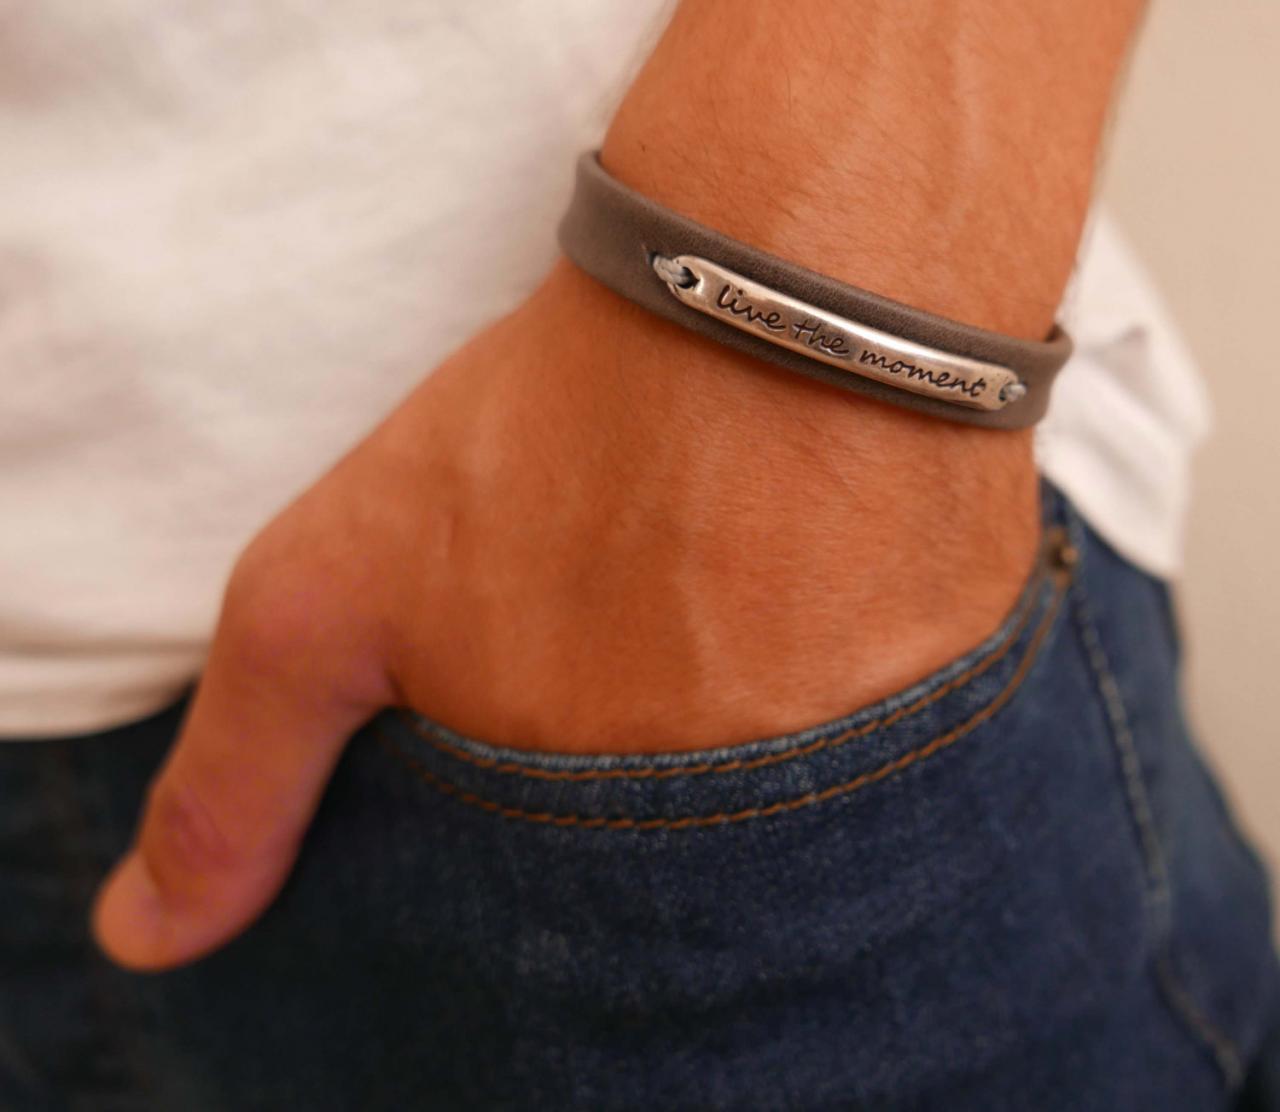 Men's Bracelet - Men's Leather Bracelet - Men's Cuff Bracelet - Men's Jewelry - Men's Gift -